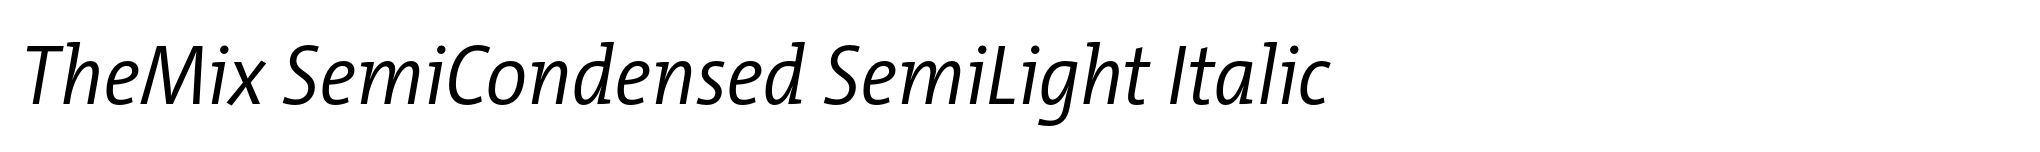 TheMix SemiCondensed SemiLight Italic image